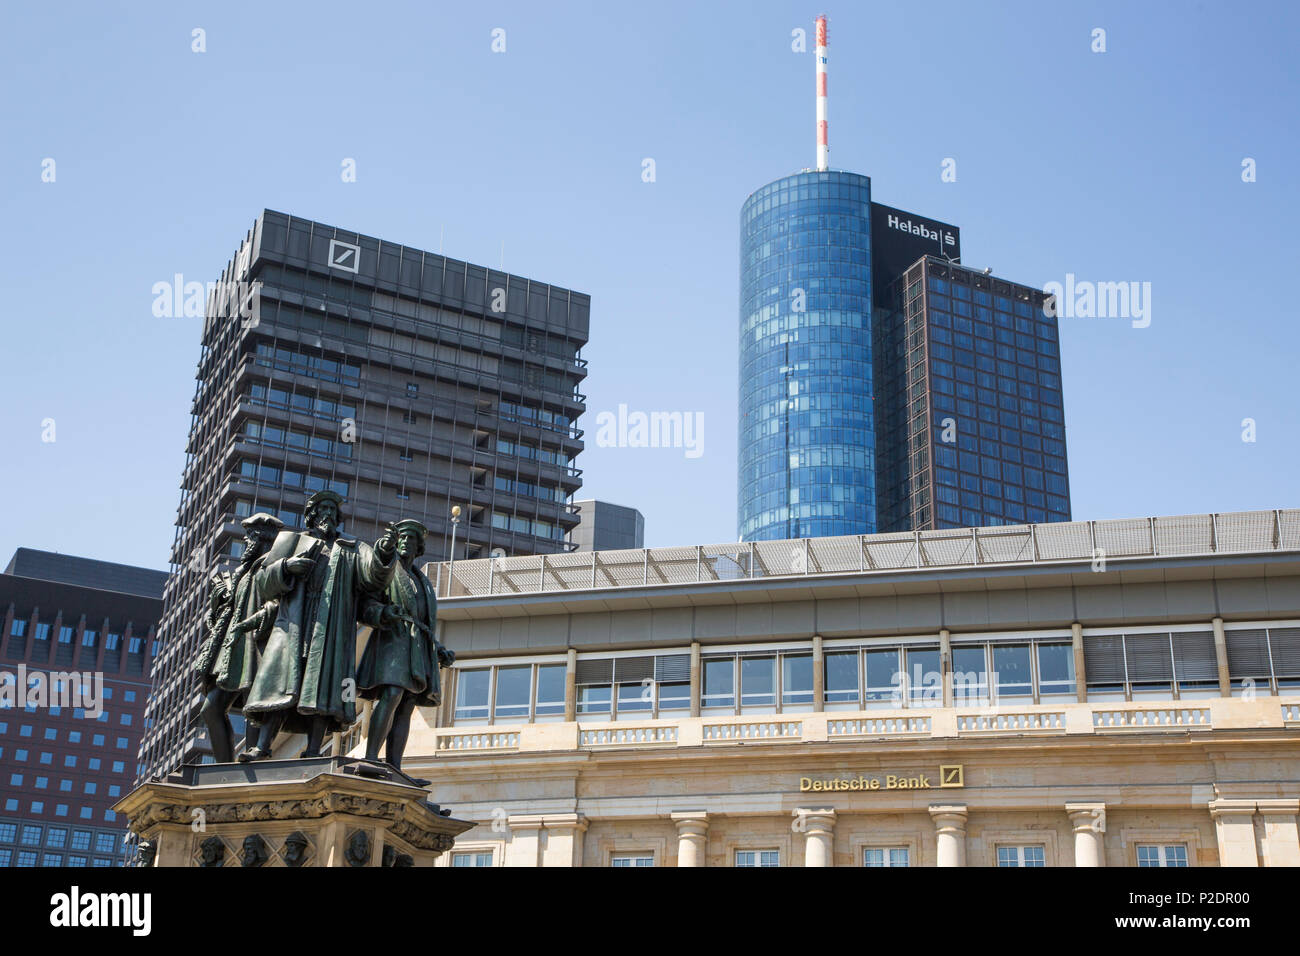 Estatua debajo de los rascacielos del distrito financiero con el Edificio Deutsche Bank y la torre principal Helaba, Frankfurt am Main, Hessen, Germen Foto de stock